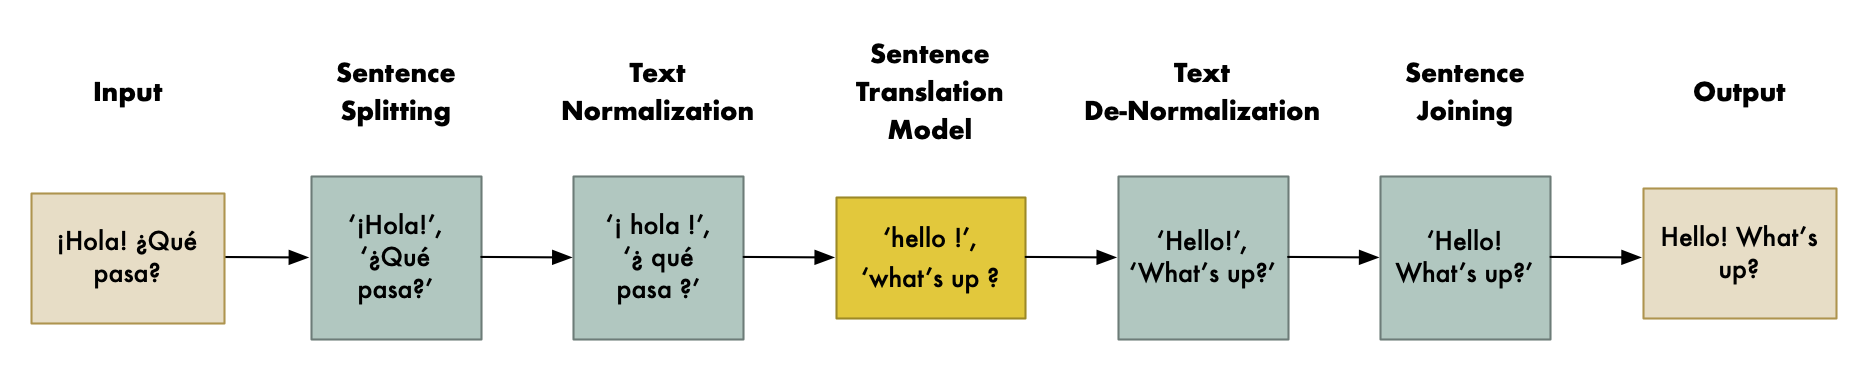 如何自己开发一个“谷歌翻译”质量的机器翻译系统？